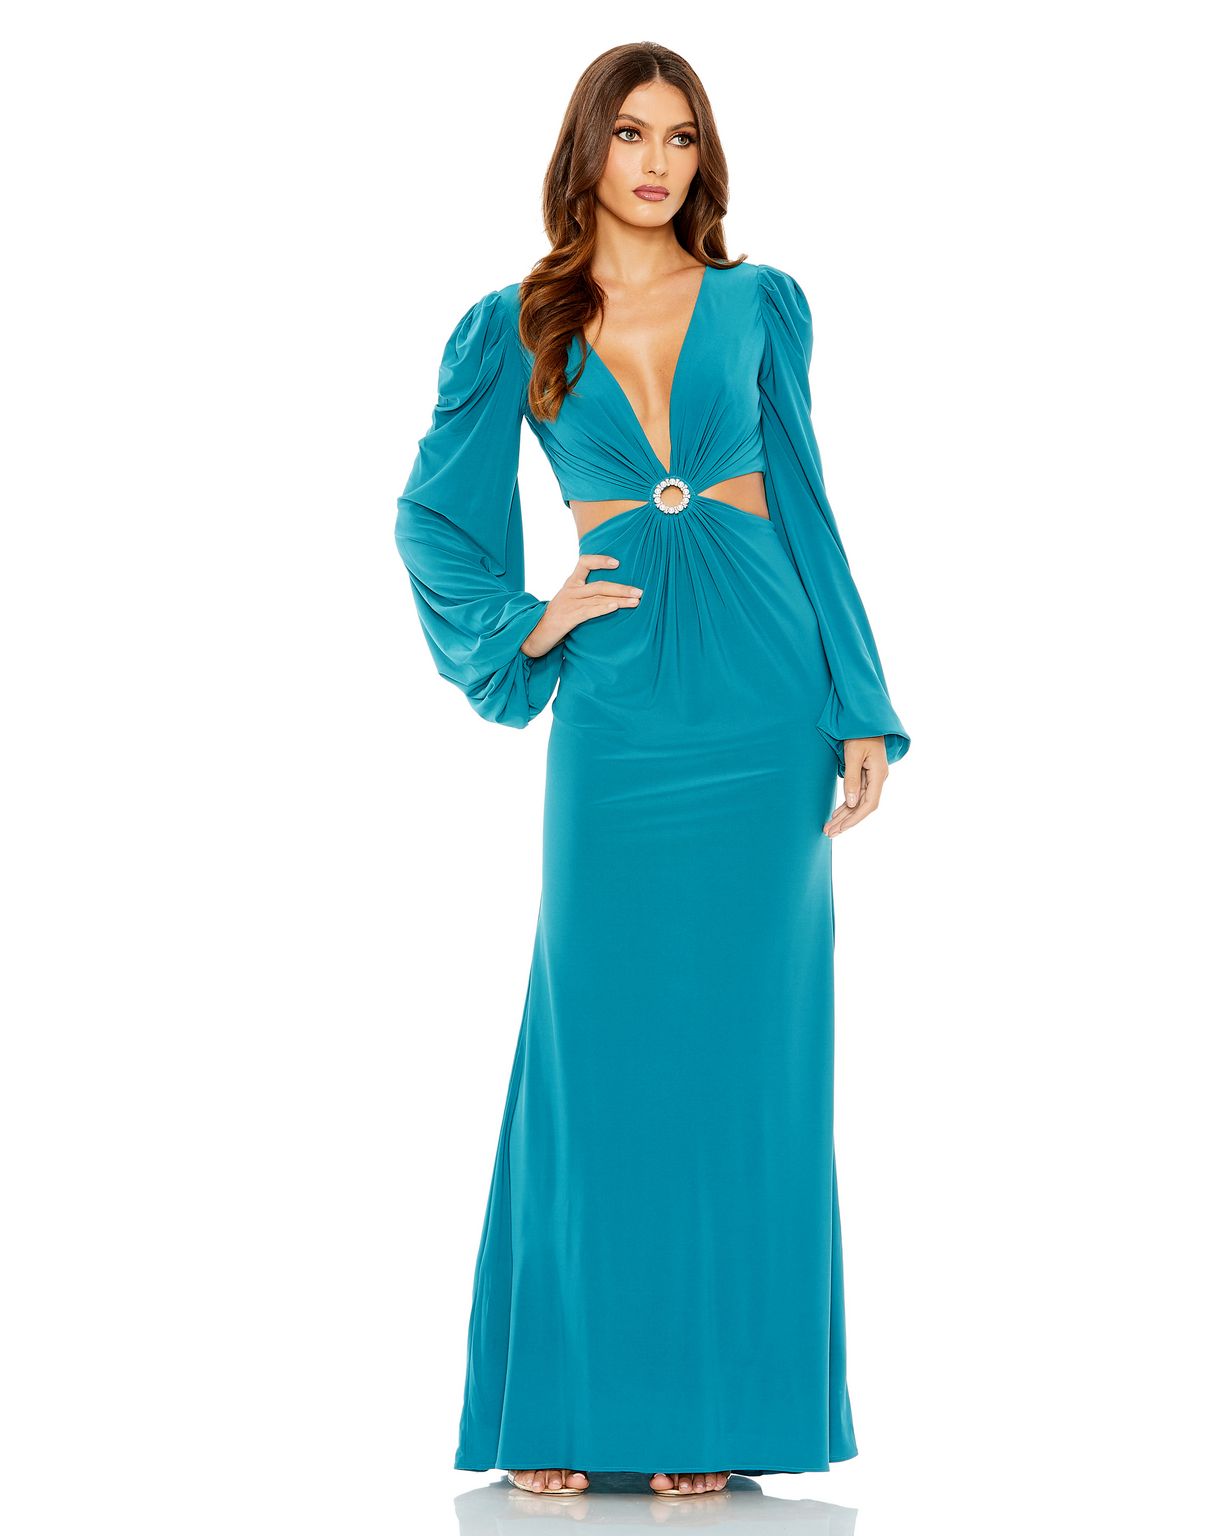 Formal Dresses Long Sleeve Cutout Formal Evening Dress Ocean Blue